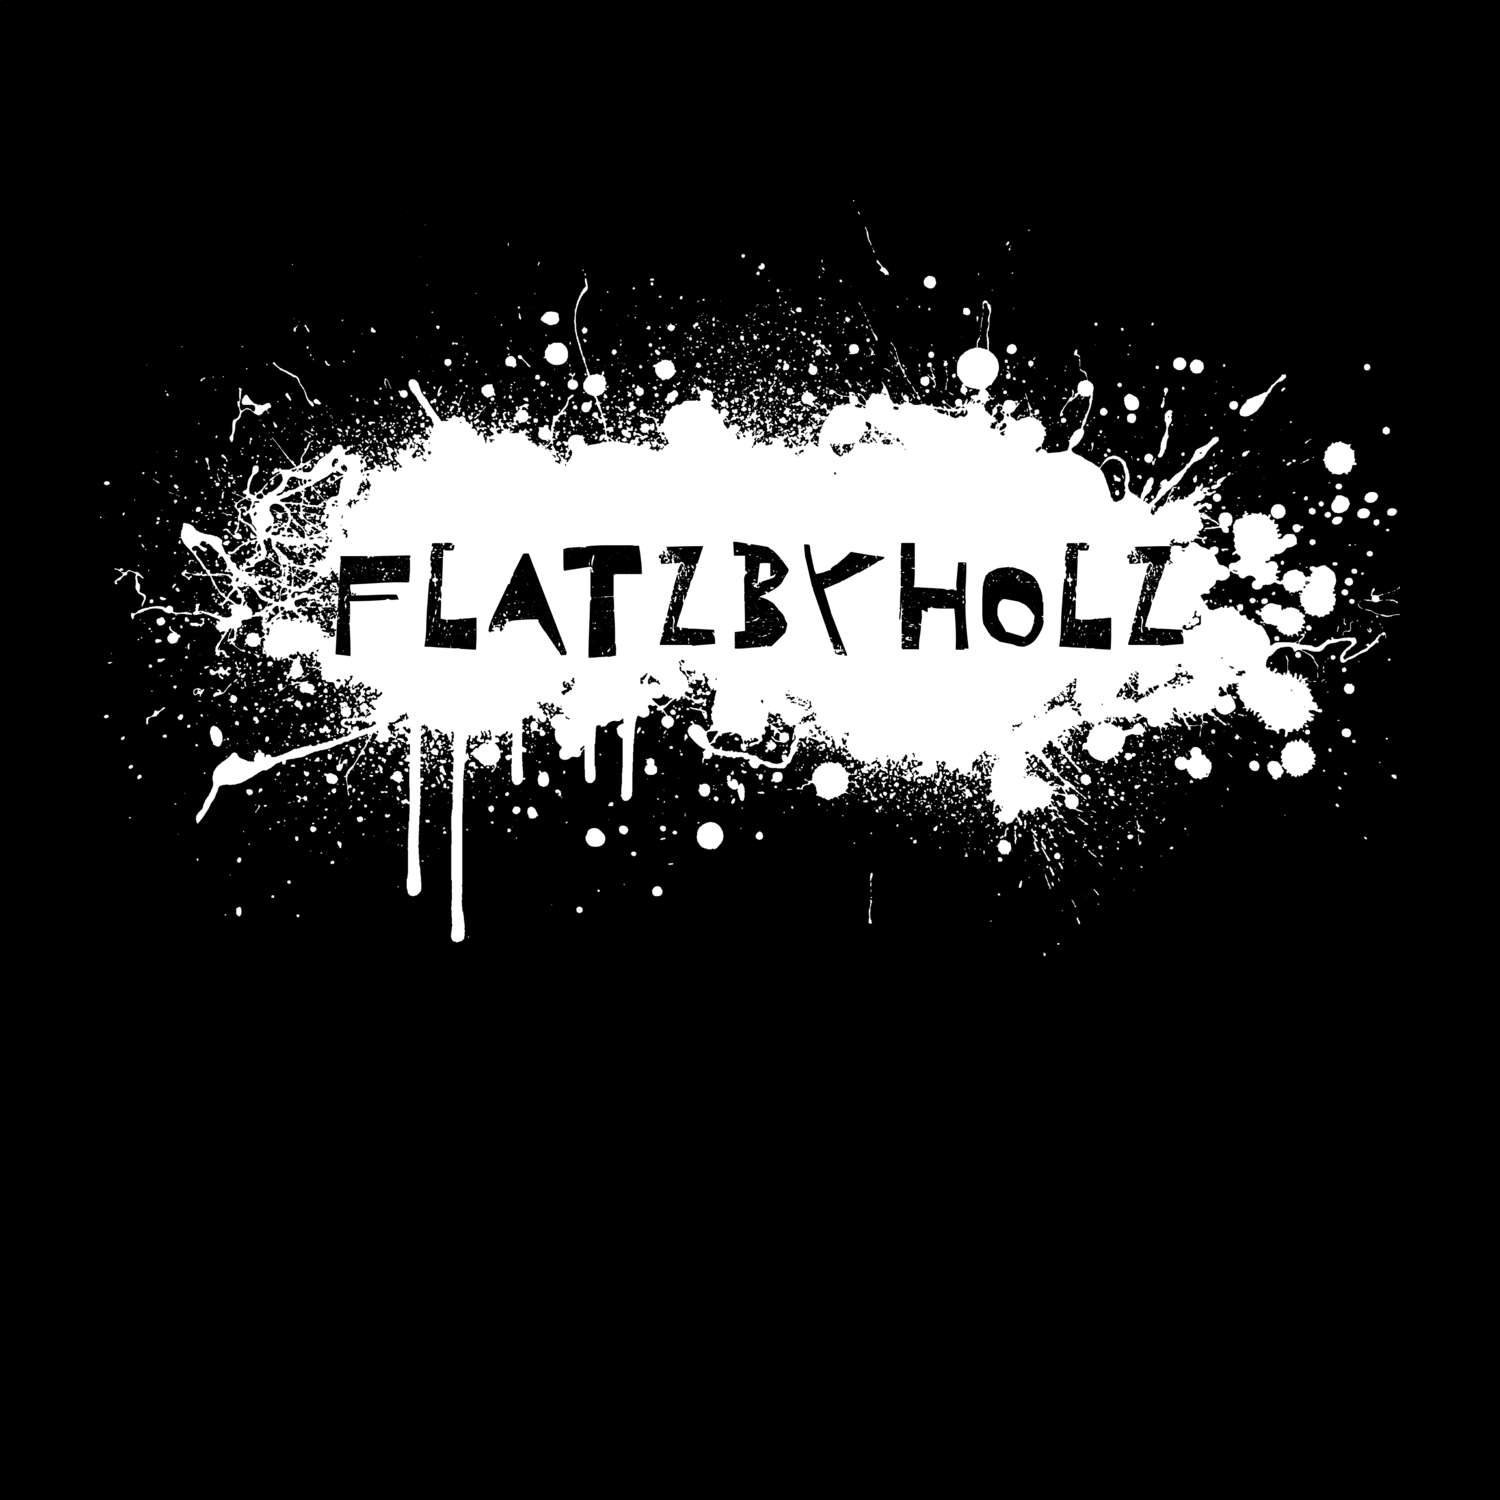 Flatzbyholz T-Shirt »Paint Splash Punk«